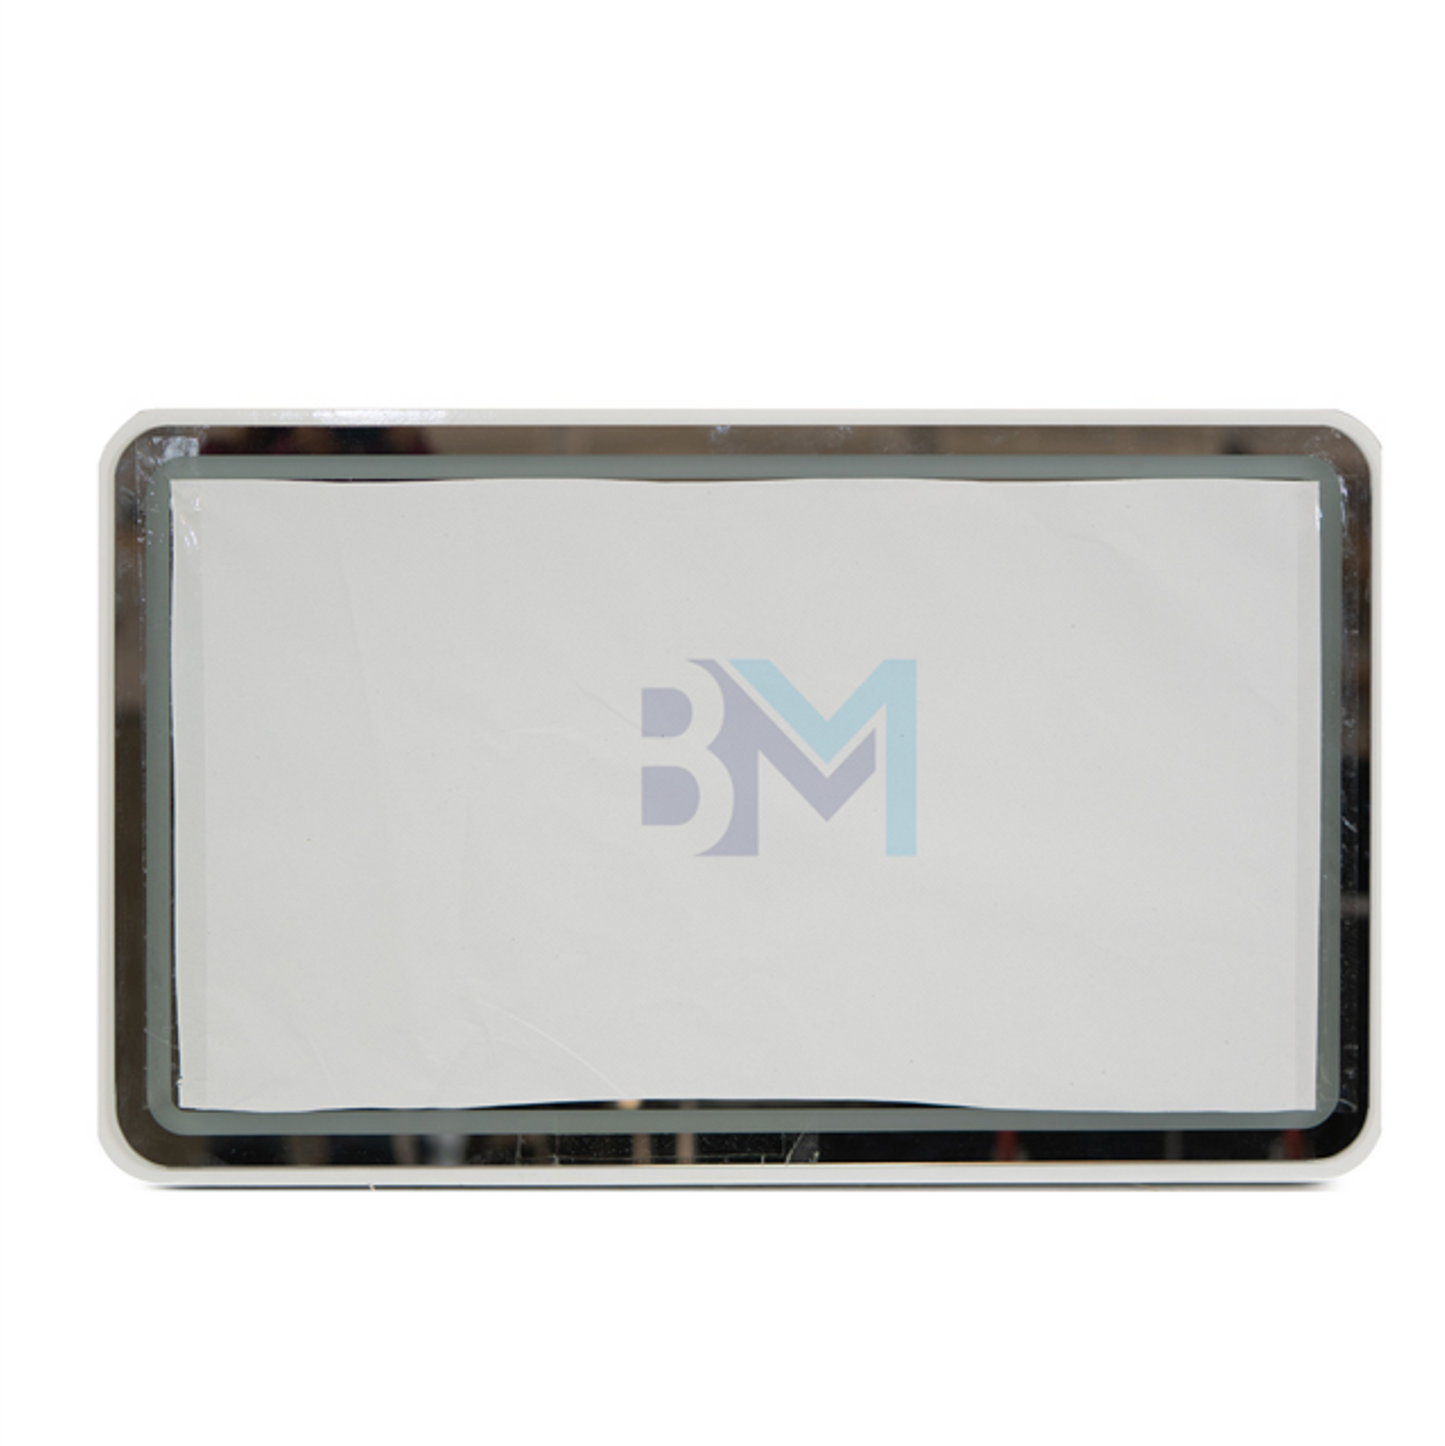 Espejo rectangular tocador con marco metalizado blanco y luz led integrada de color azul